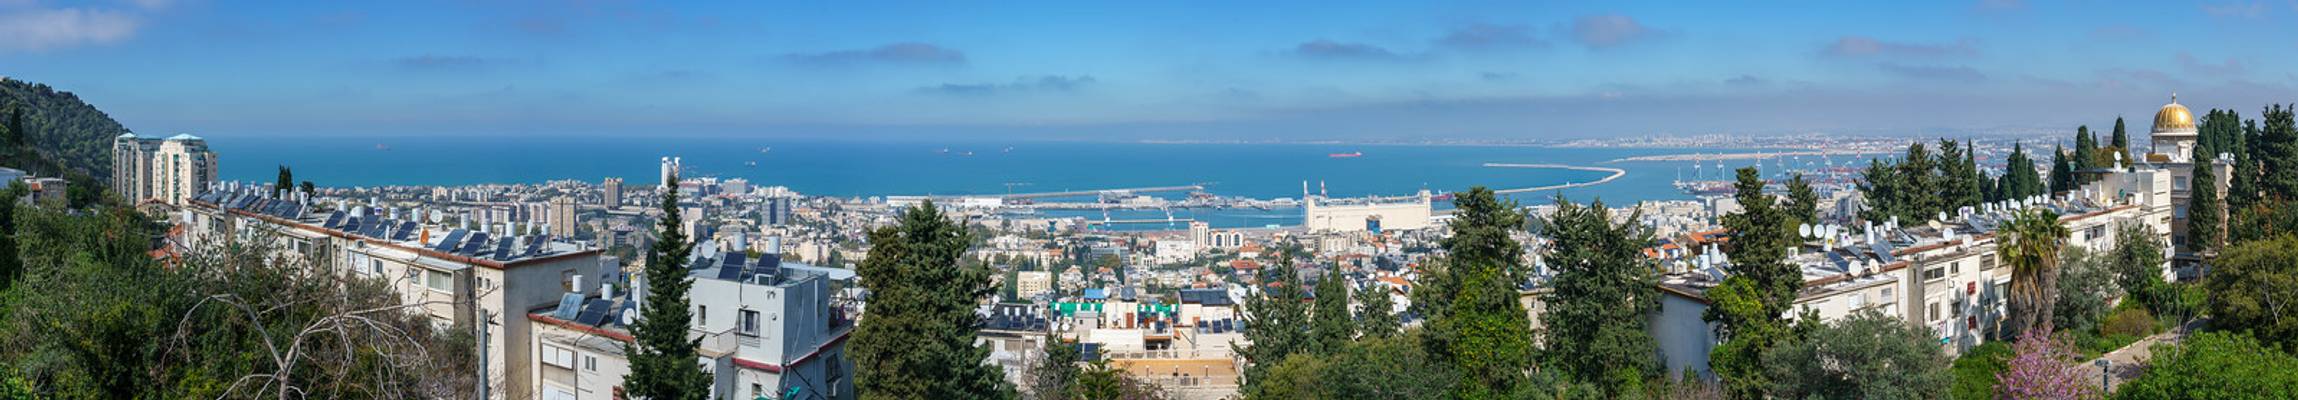 Haifa in Israel, Hafen und Schrein des Bab (Bahai)